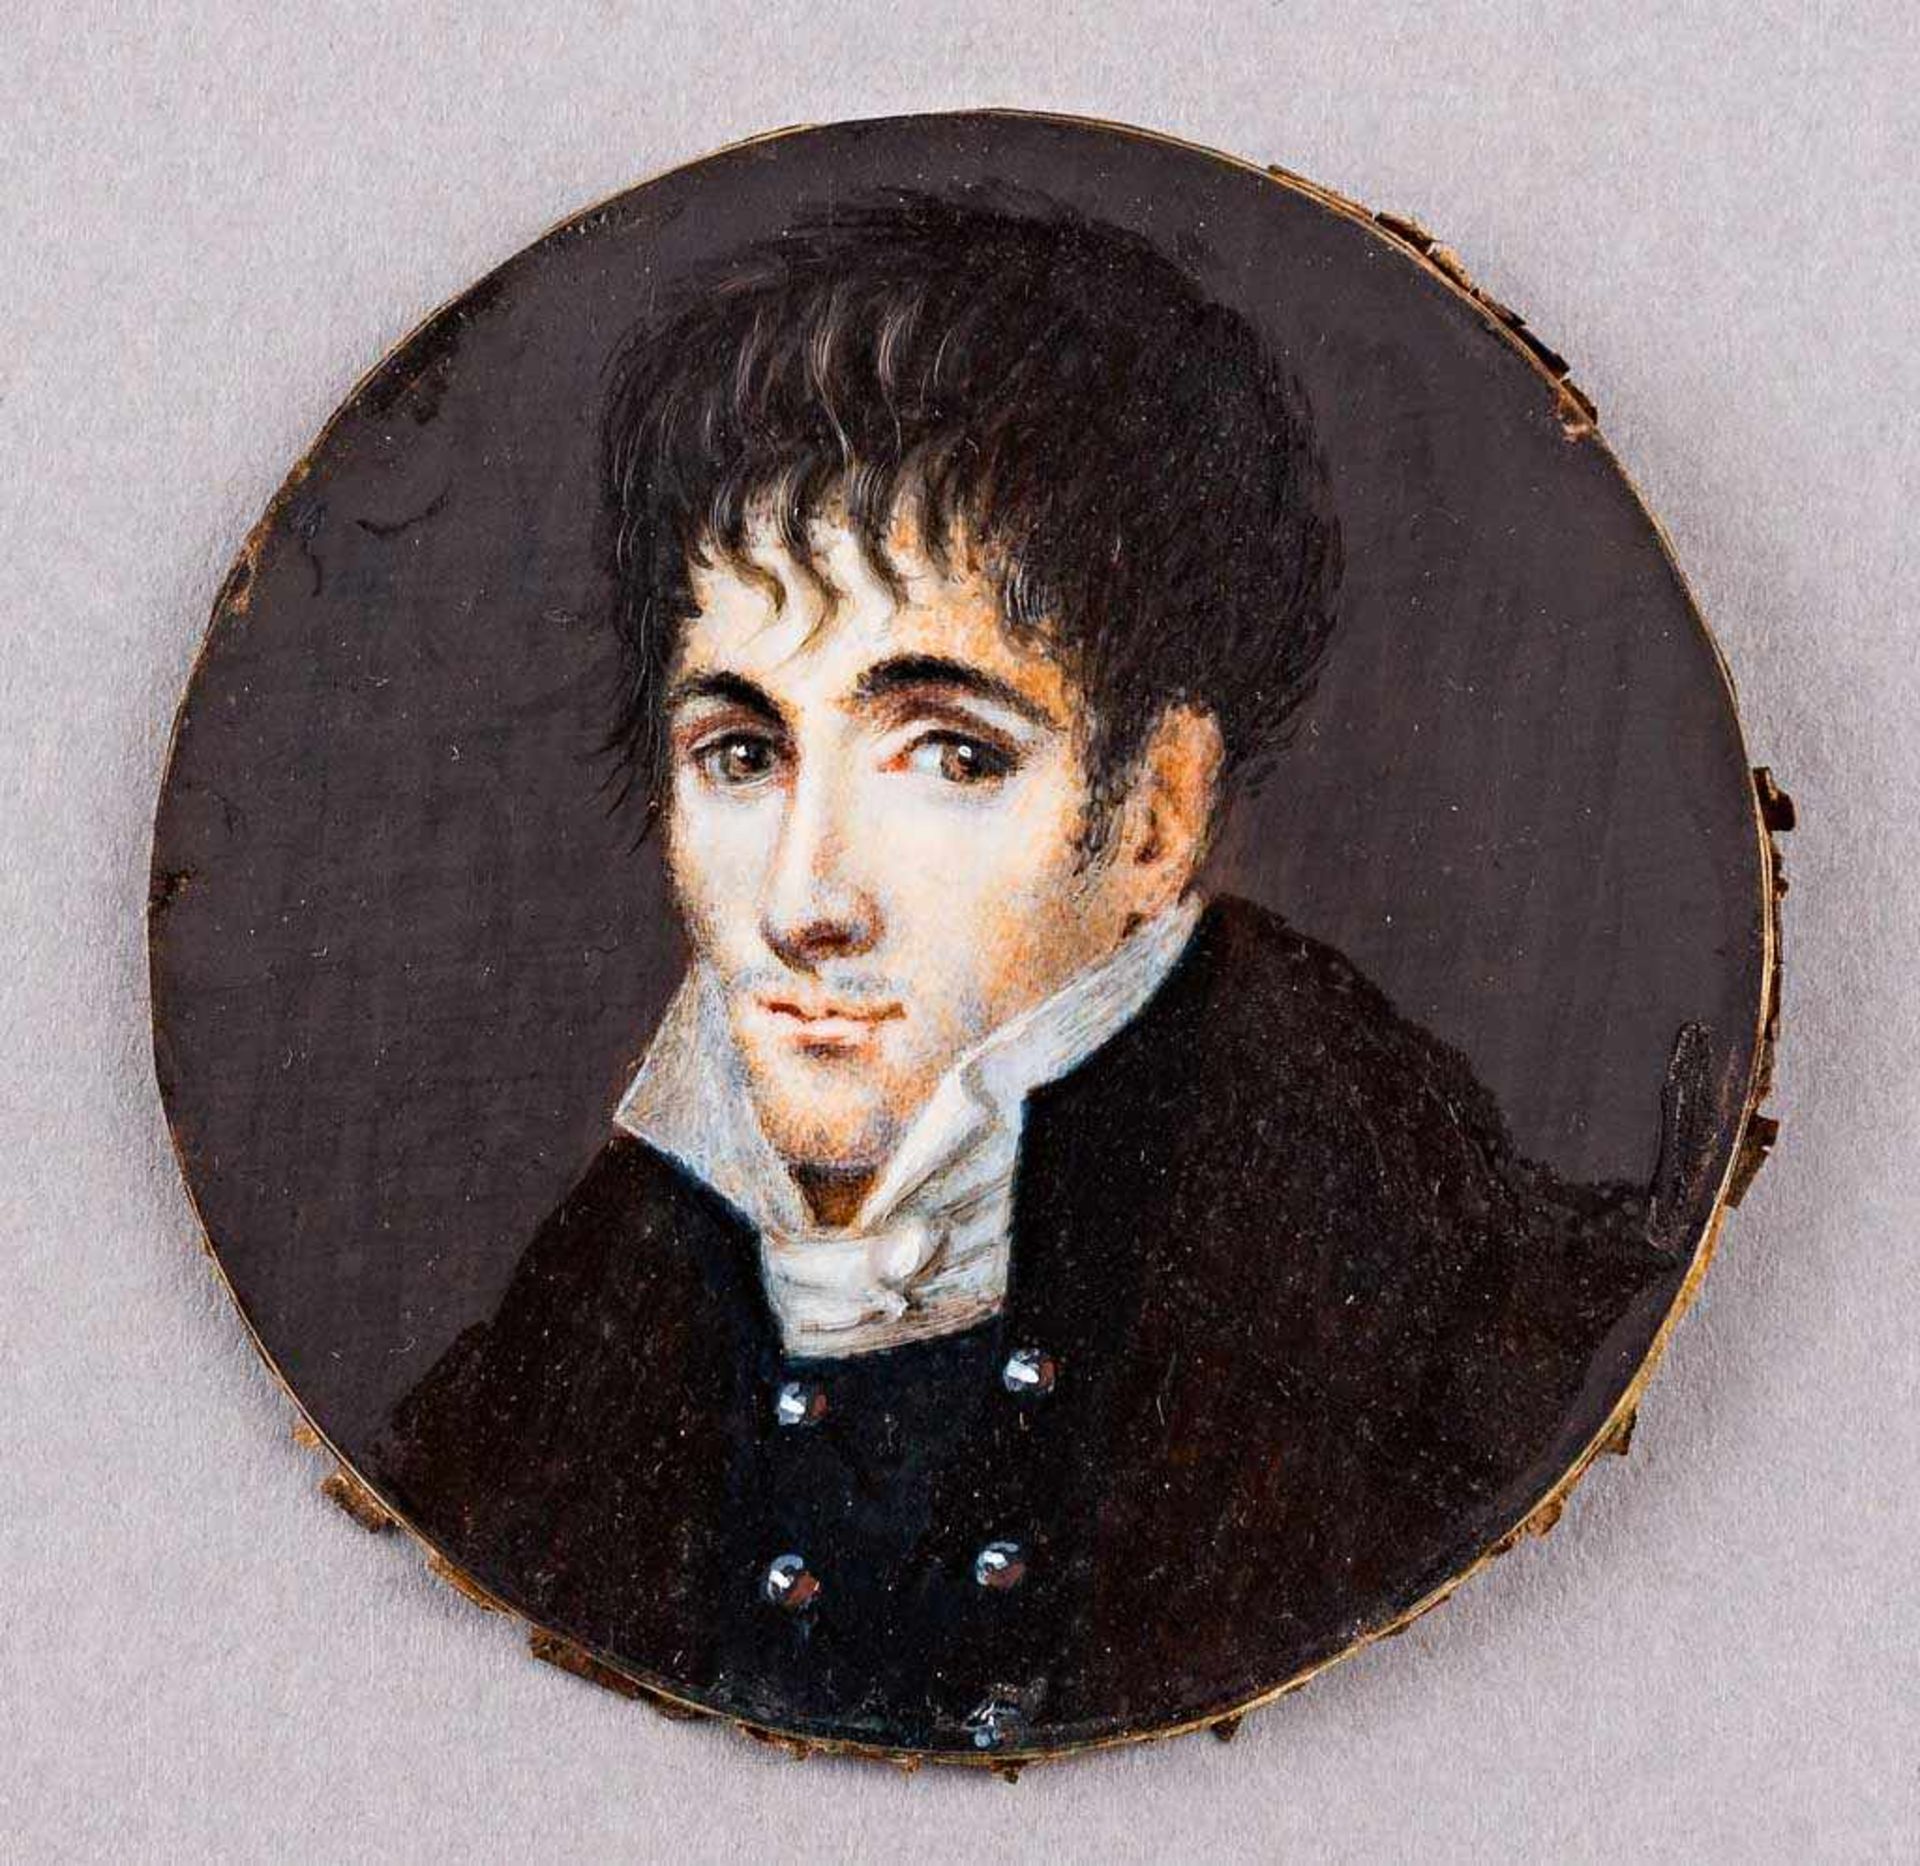 Portrait des George Gordon Byron (?). Auf Elfenbein. Anf. 19. Jh. Ø 5,7 cm. R- - -27.00 % buyer's